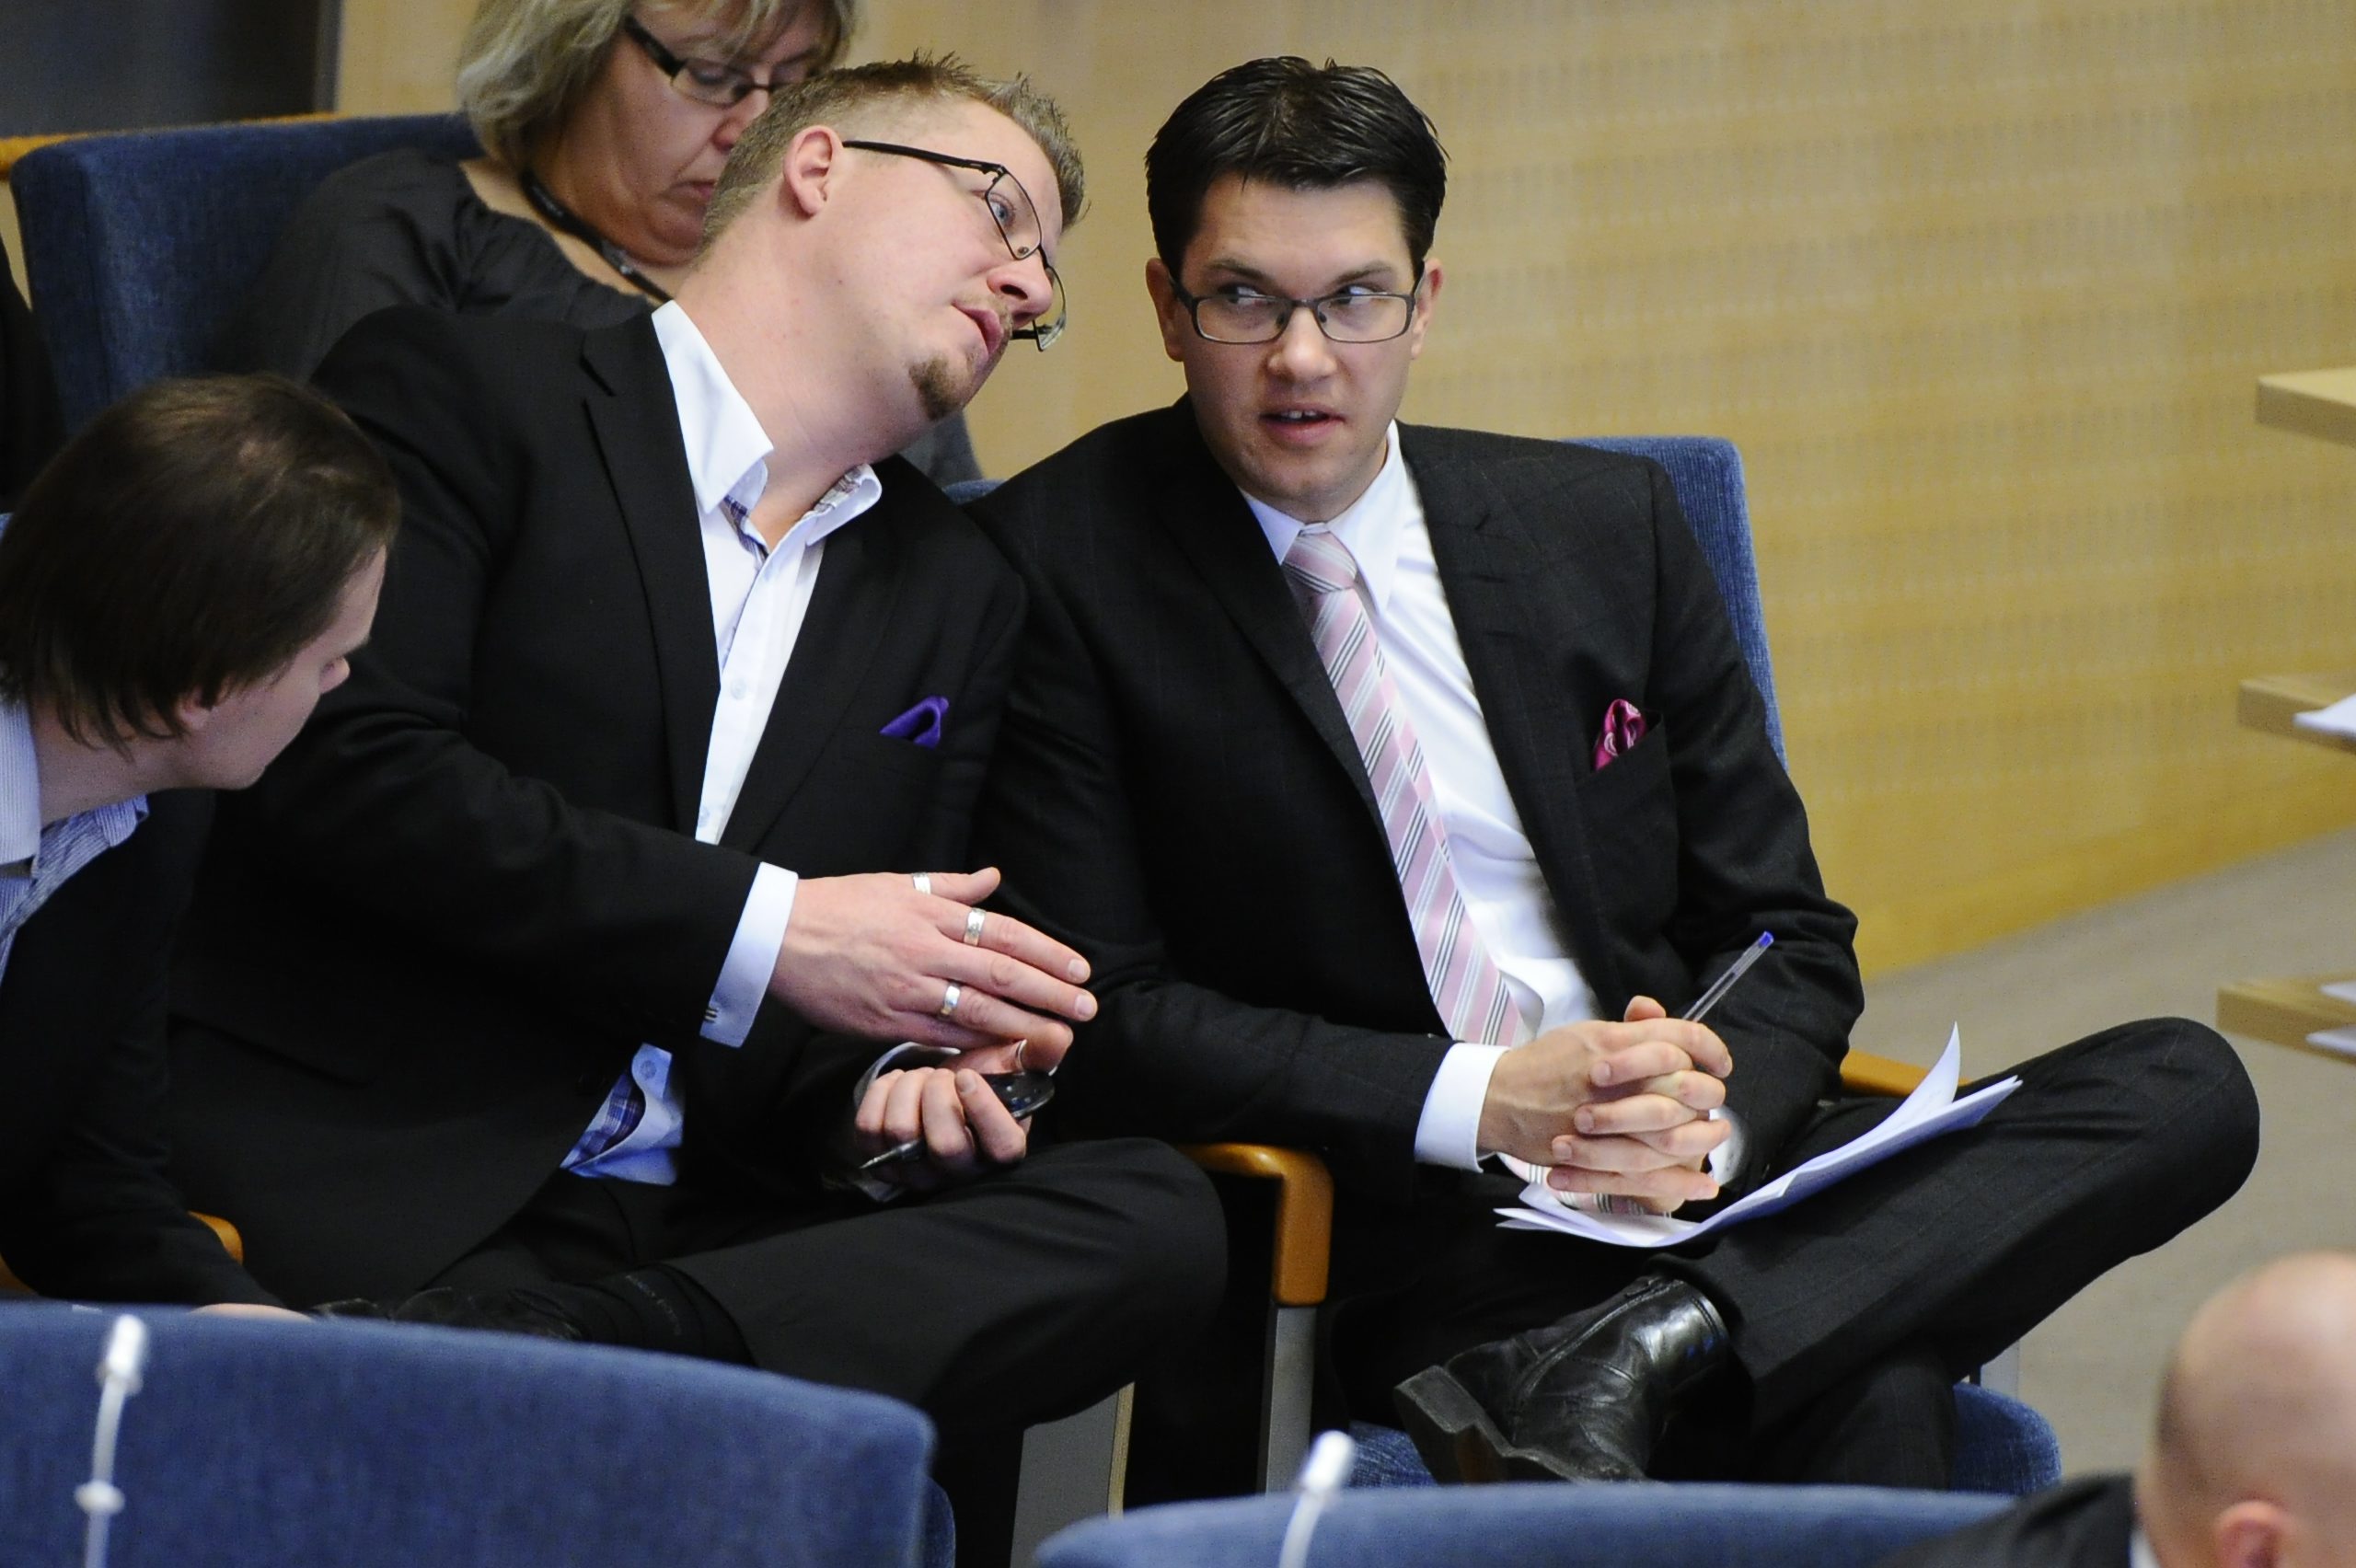 Jimmie Åkessons pressekreterare Linus Bylund hävdar att allt är påhittat.